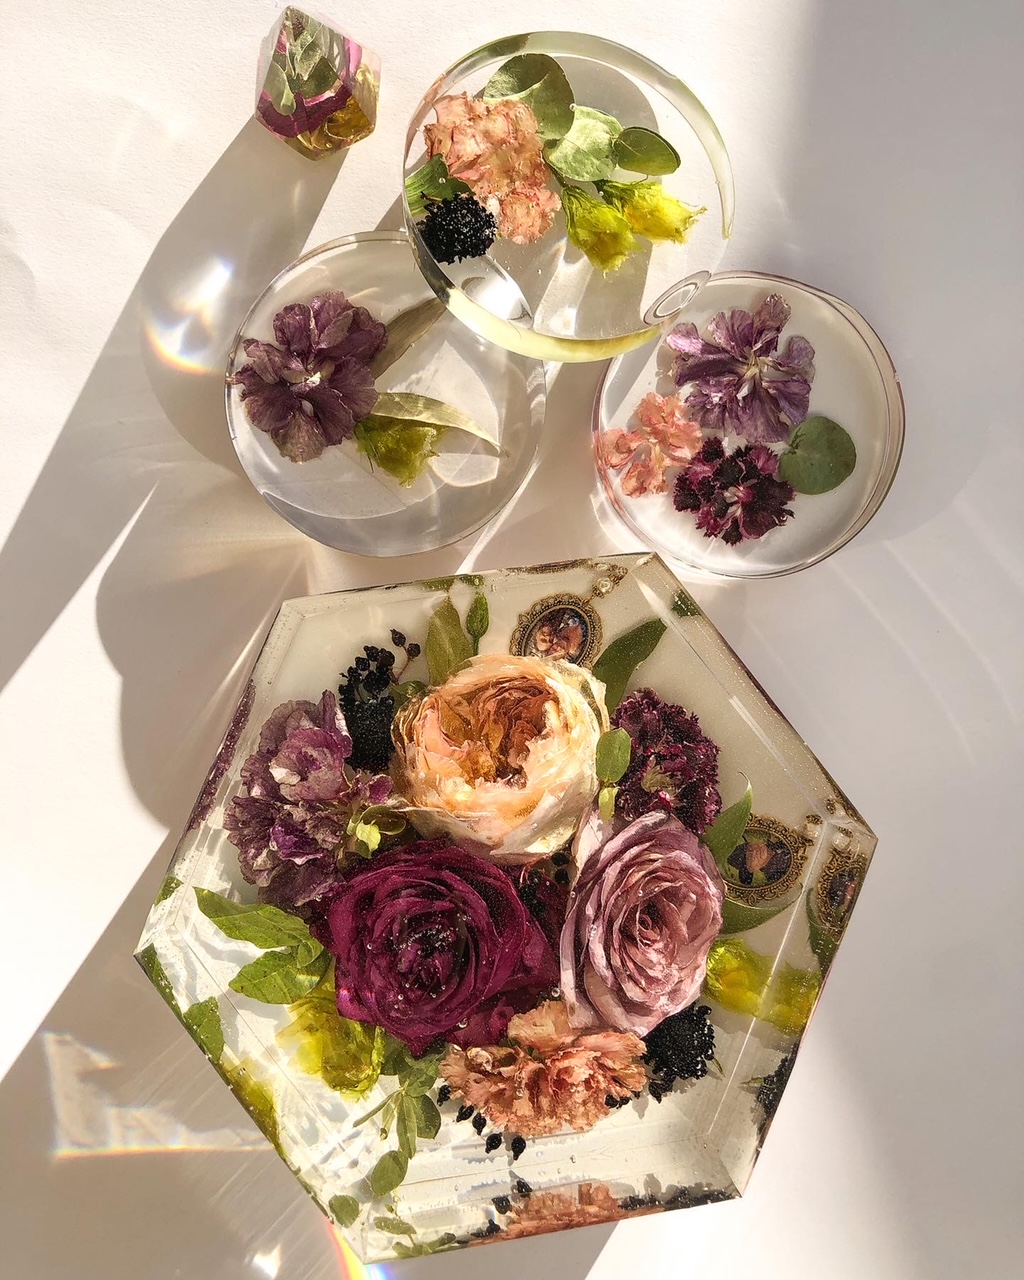 Nashville wedding flower preservation by Amy & I Designs